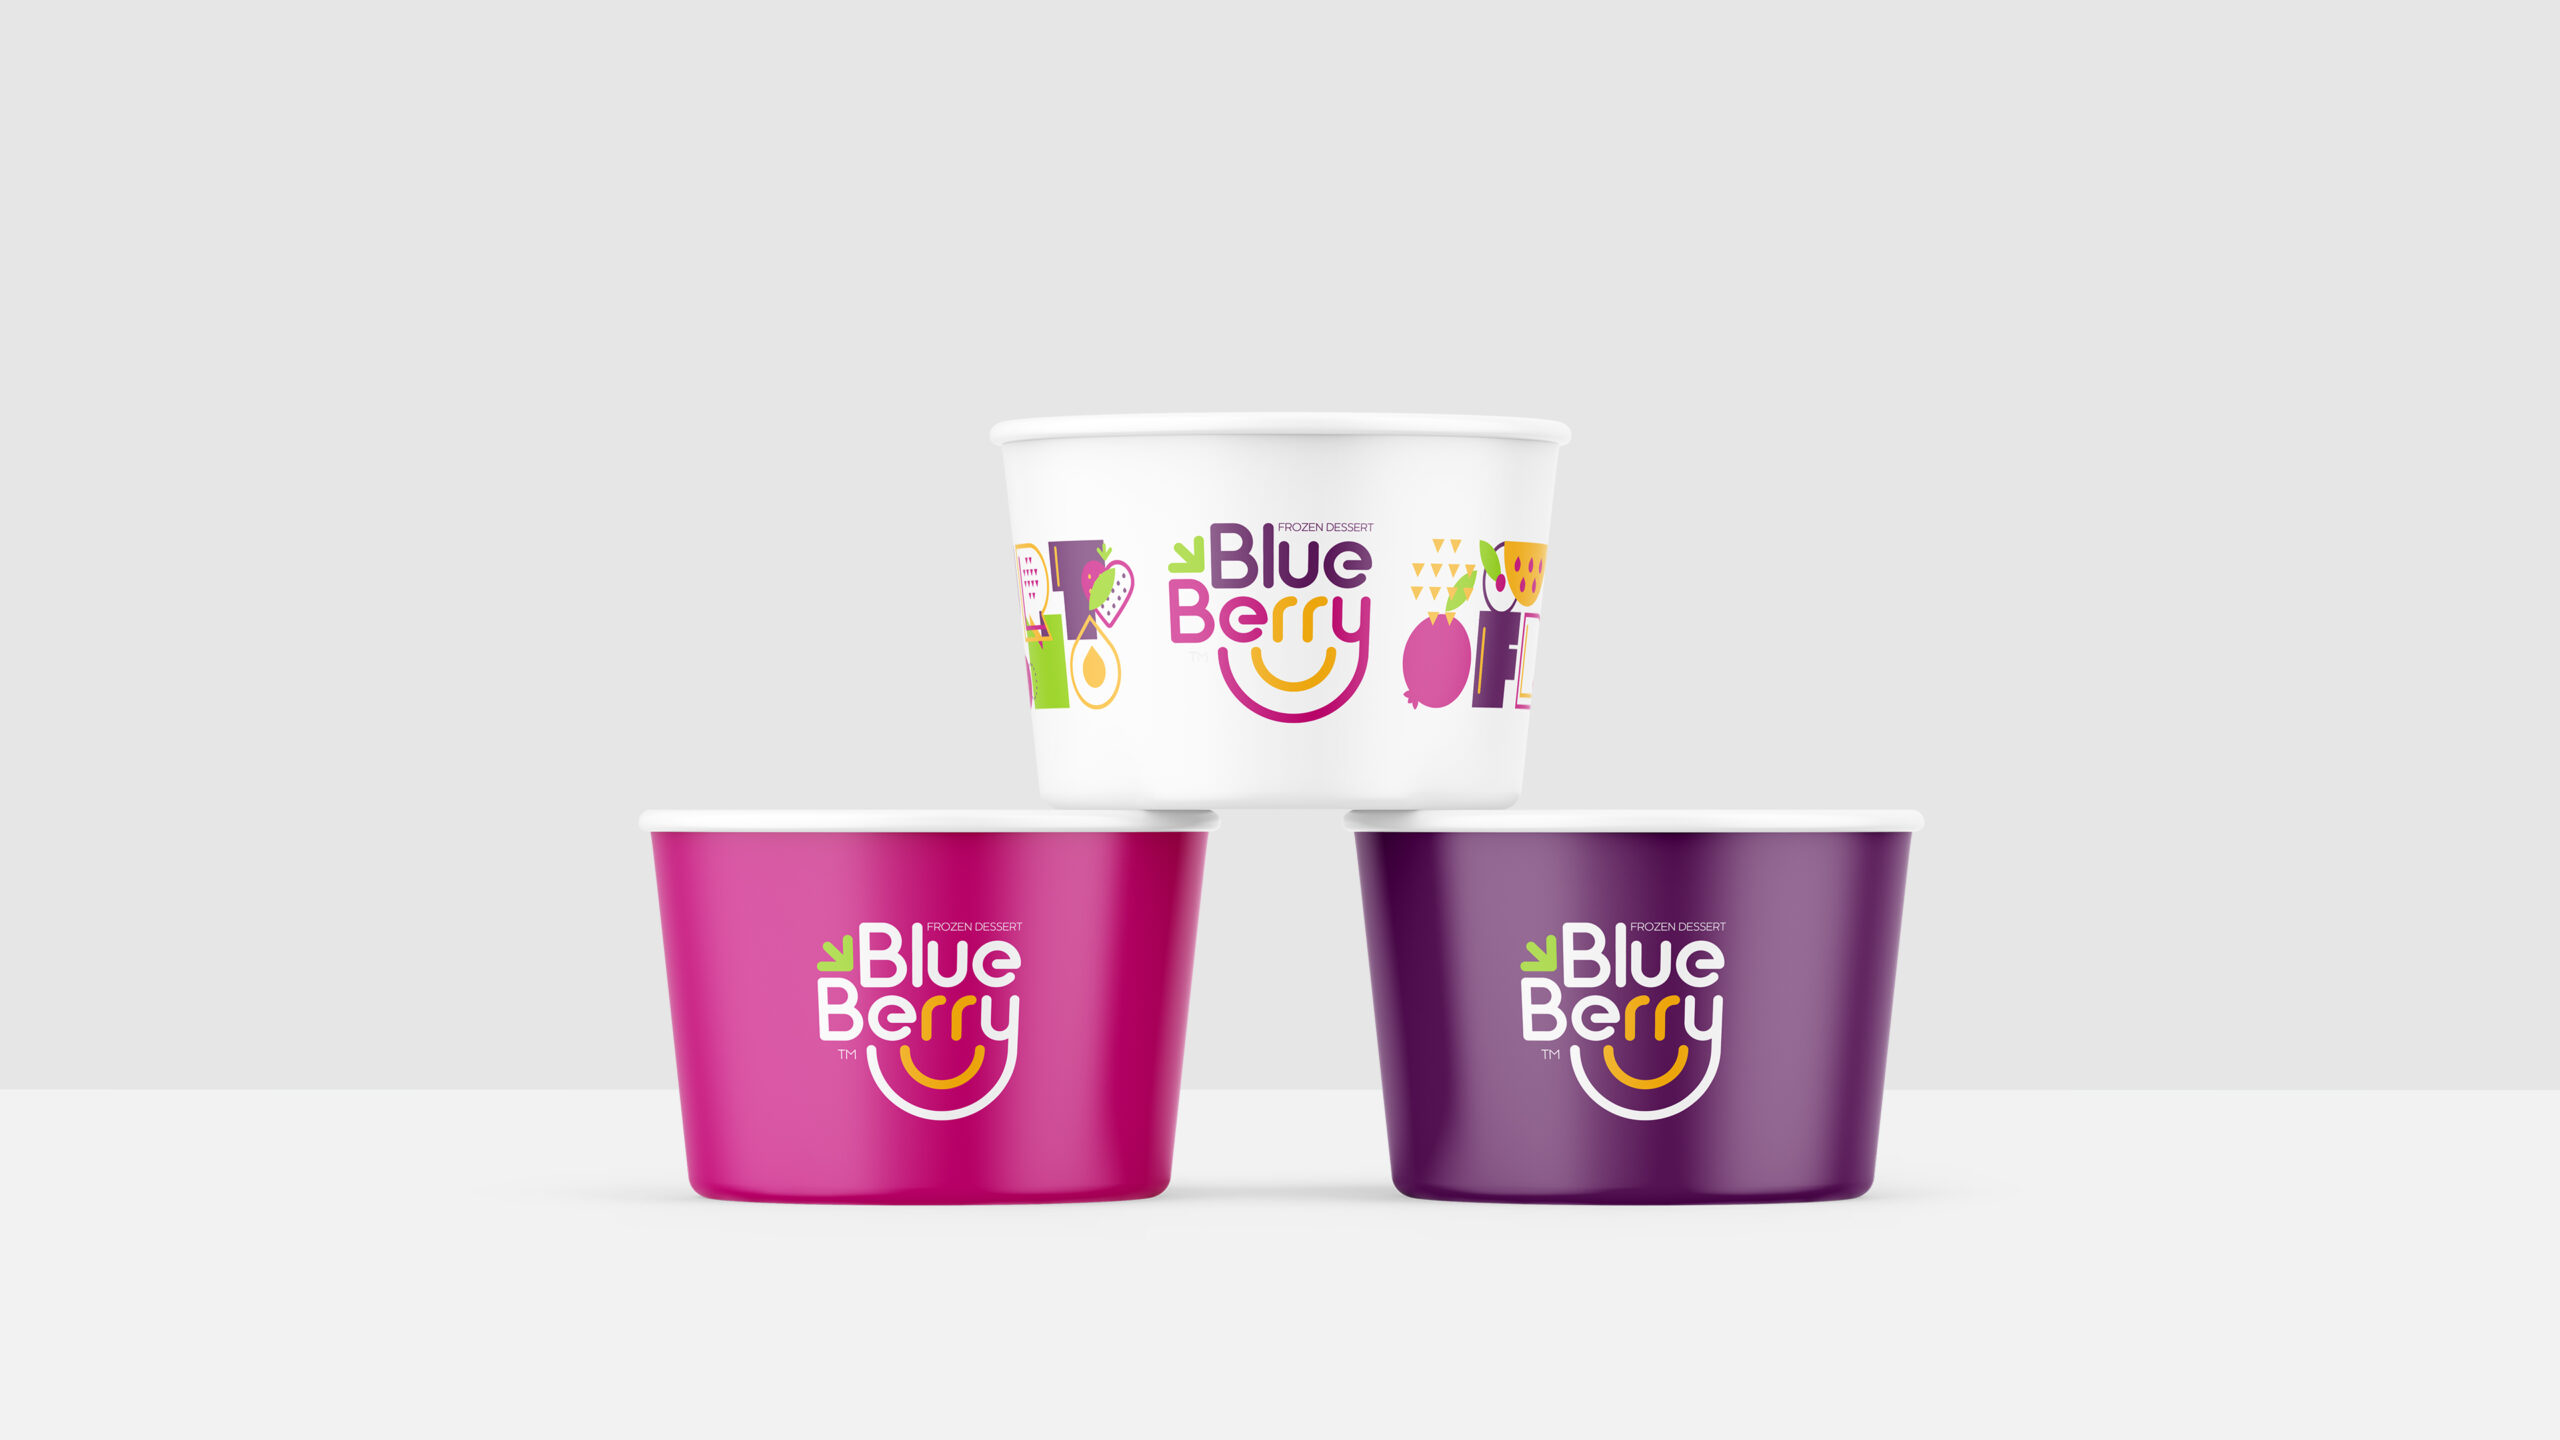 Blueberry-Frozen-Dessert-Branding-By-Millimeter-Creative-Agency-Cover-M04